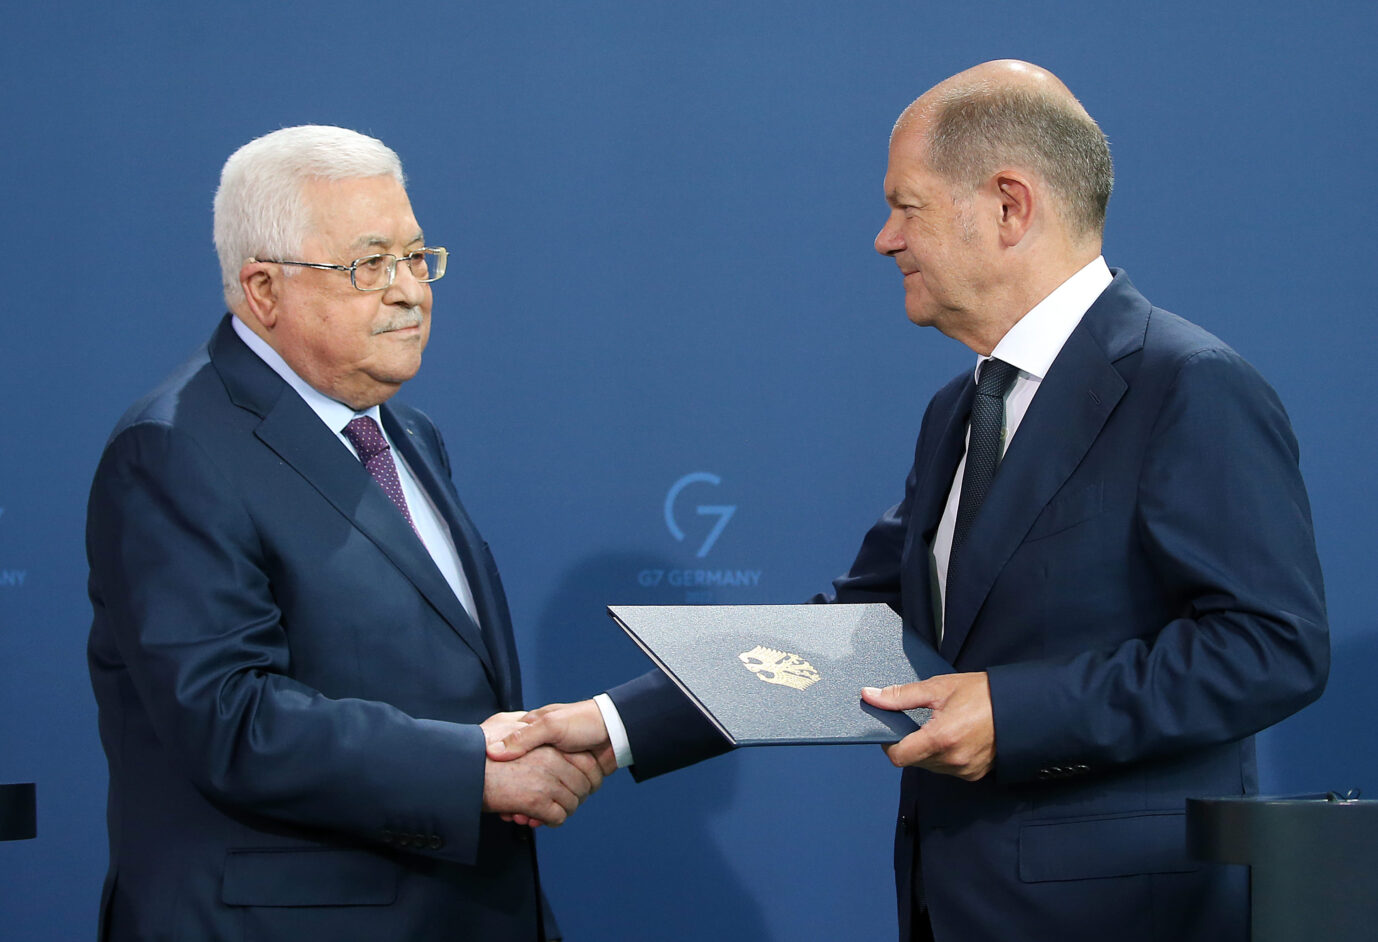 Palästinenserpräsident Mahmud Abbas (links) freut sich trotz seines skandalösen Auftritts über 340 Millionen Euro aus Deutschland. Die Holocaust-Äußerungen haben keine Konsequenzen.